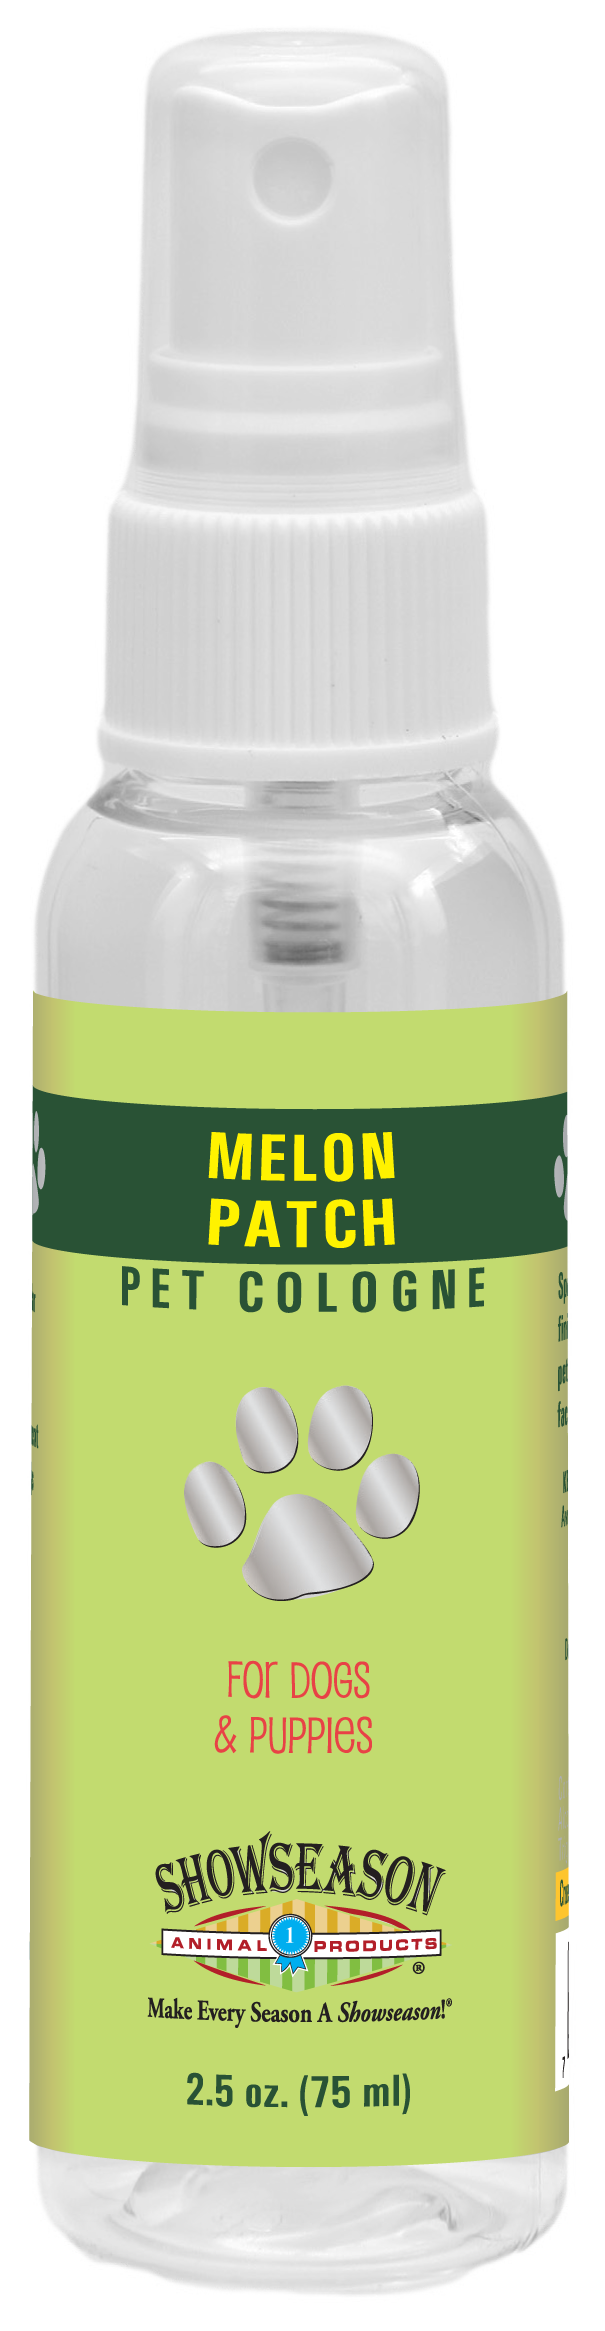 Melon Patch Pet Cologne